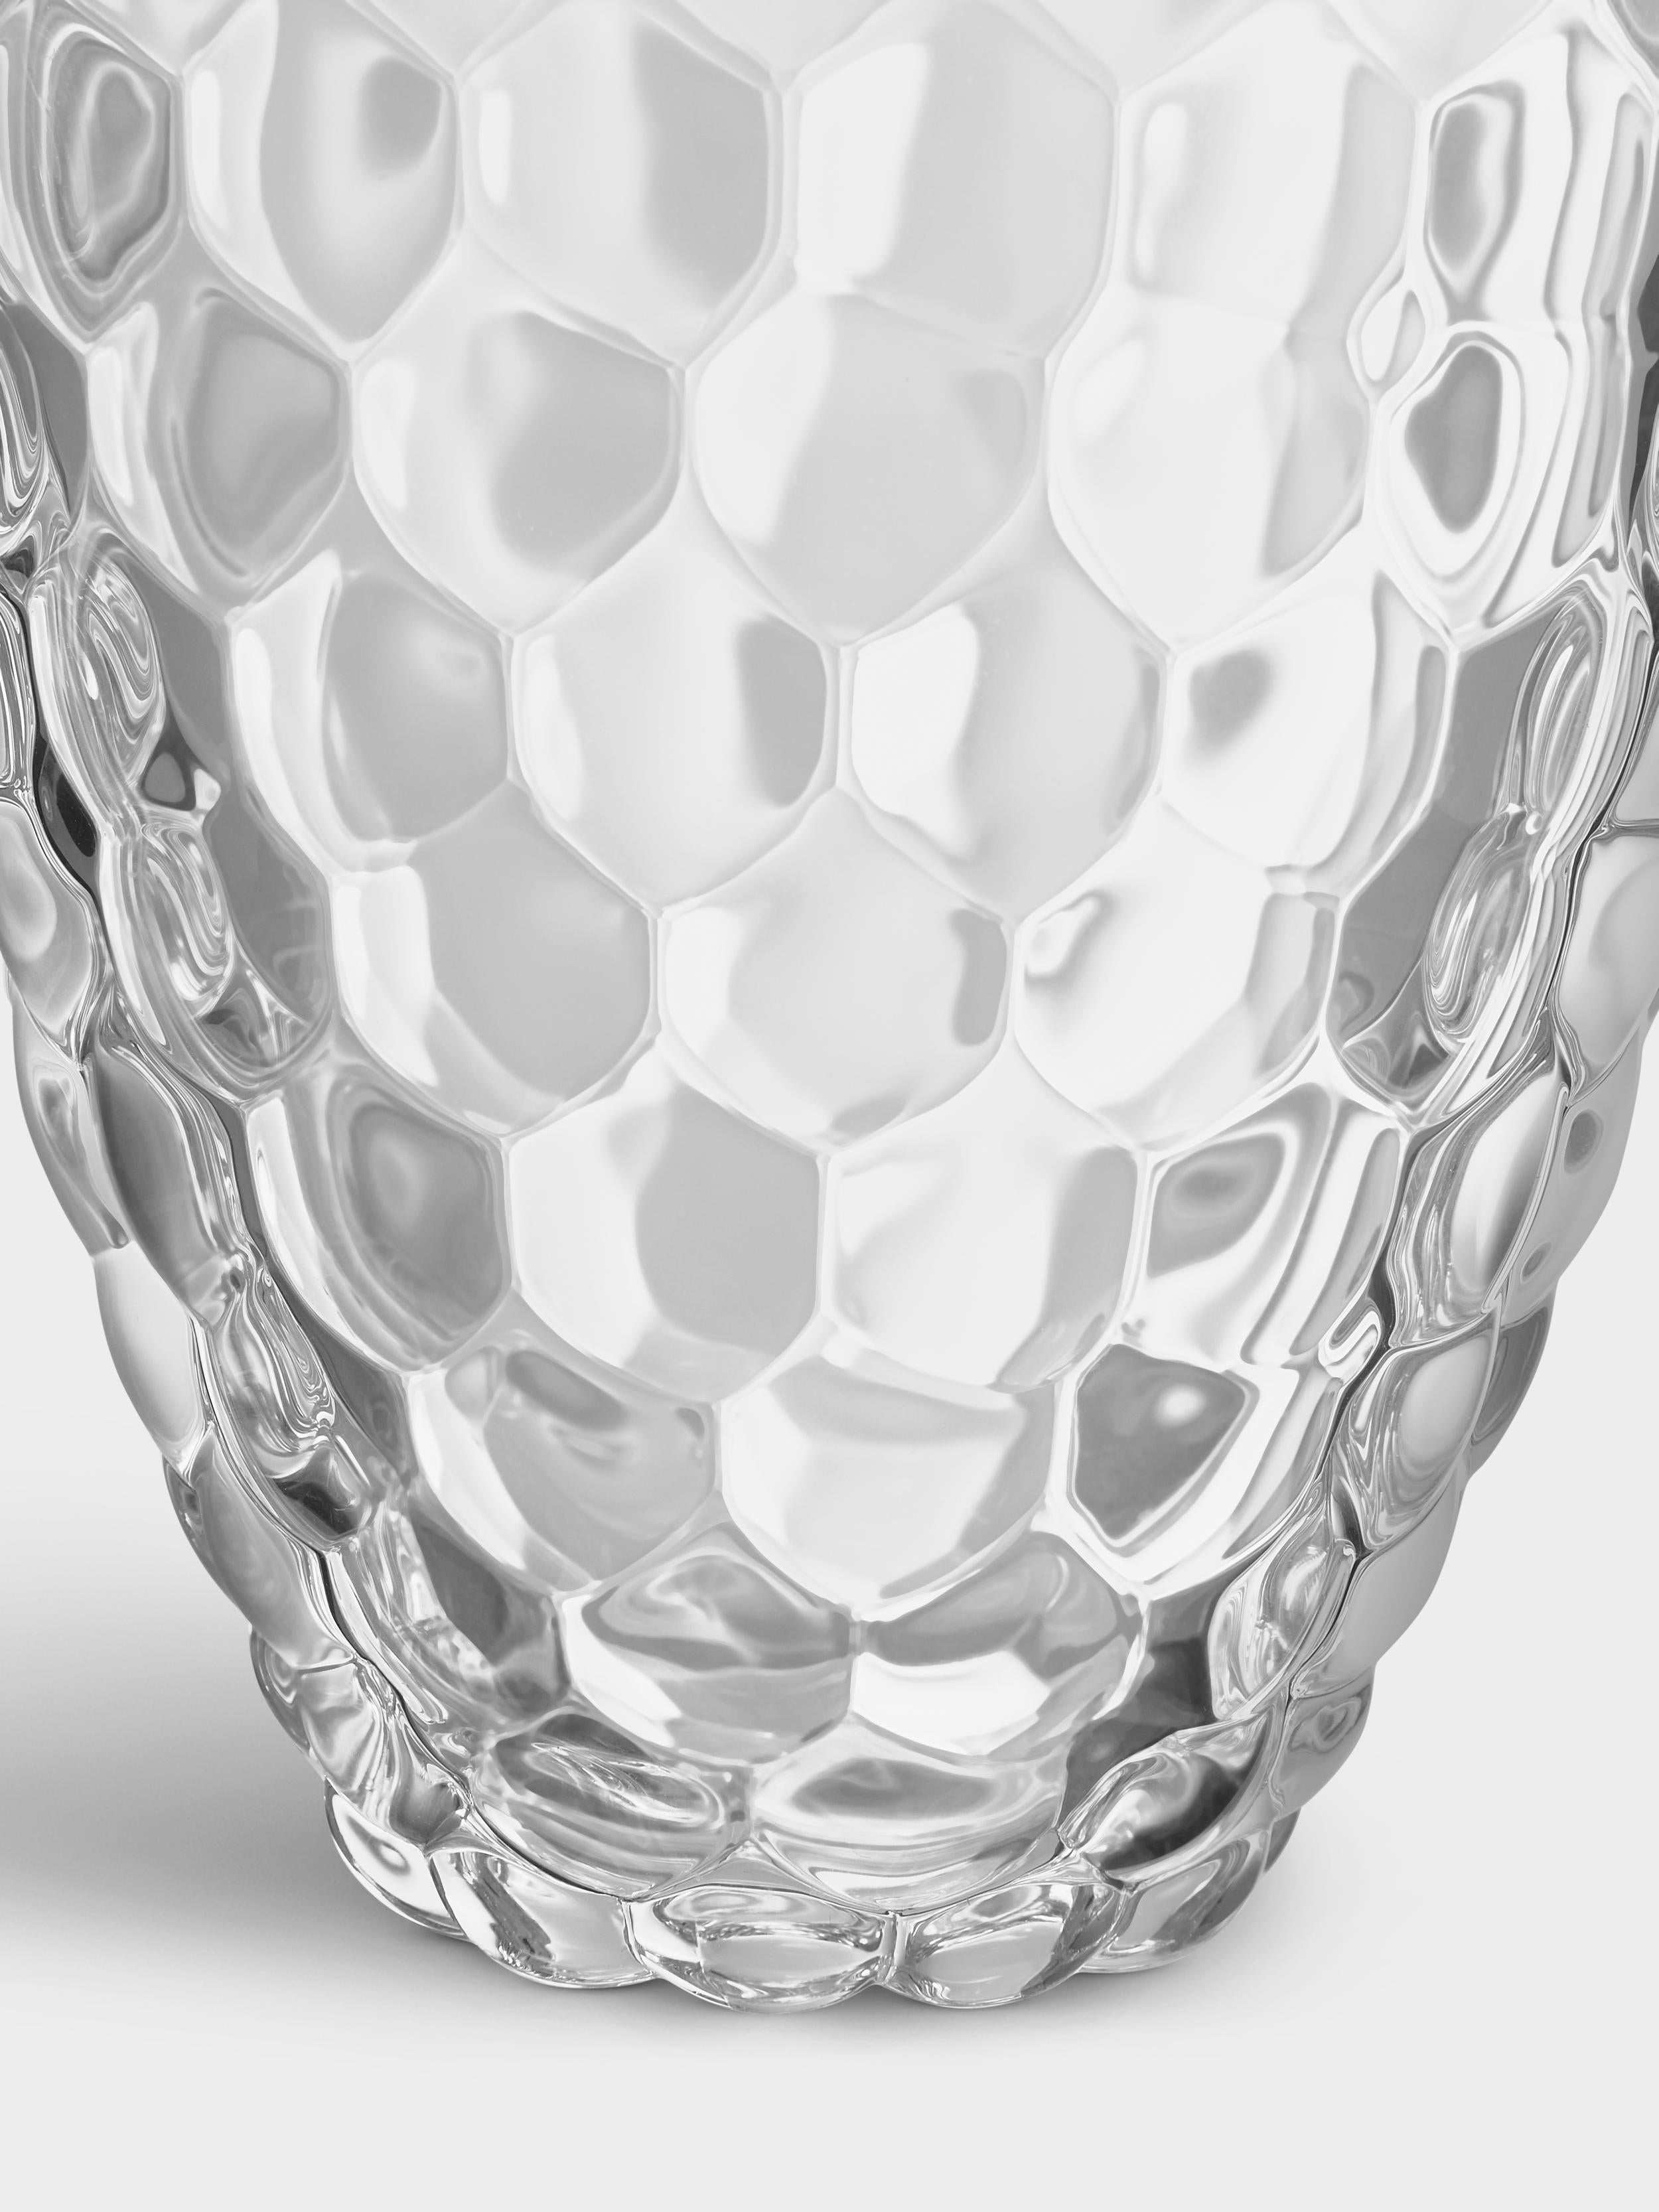 Raspberry ist ein beliebter Klassiker von Orrefors. Die große Vase in klarem Kristall hat ein Design, das an eine Himbeere erinnert und mit seinen runden Steinfrüchten